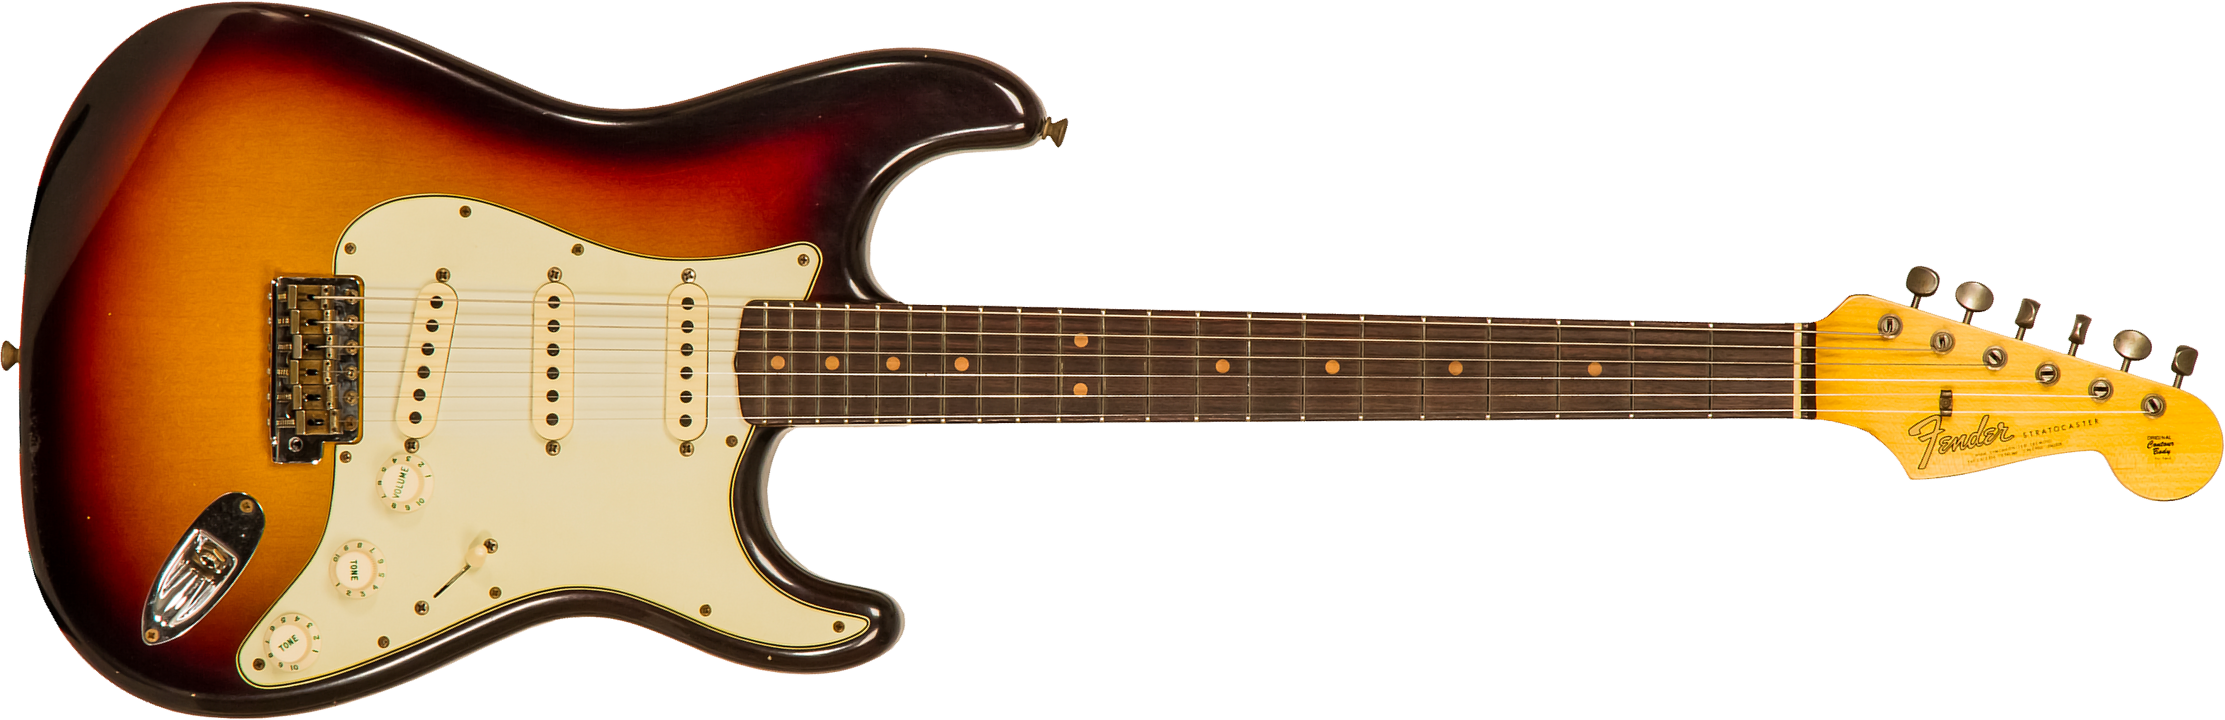 Fender Custom Shop Strat 1964 3s Trem Rw - Journeyman Relic Target 3-color Sunburst - Guitare Électrique Forme Str - Main picture